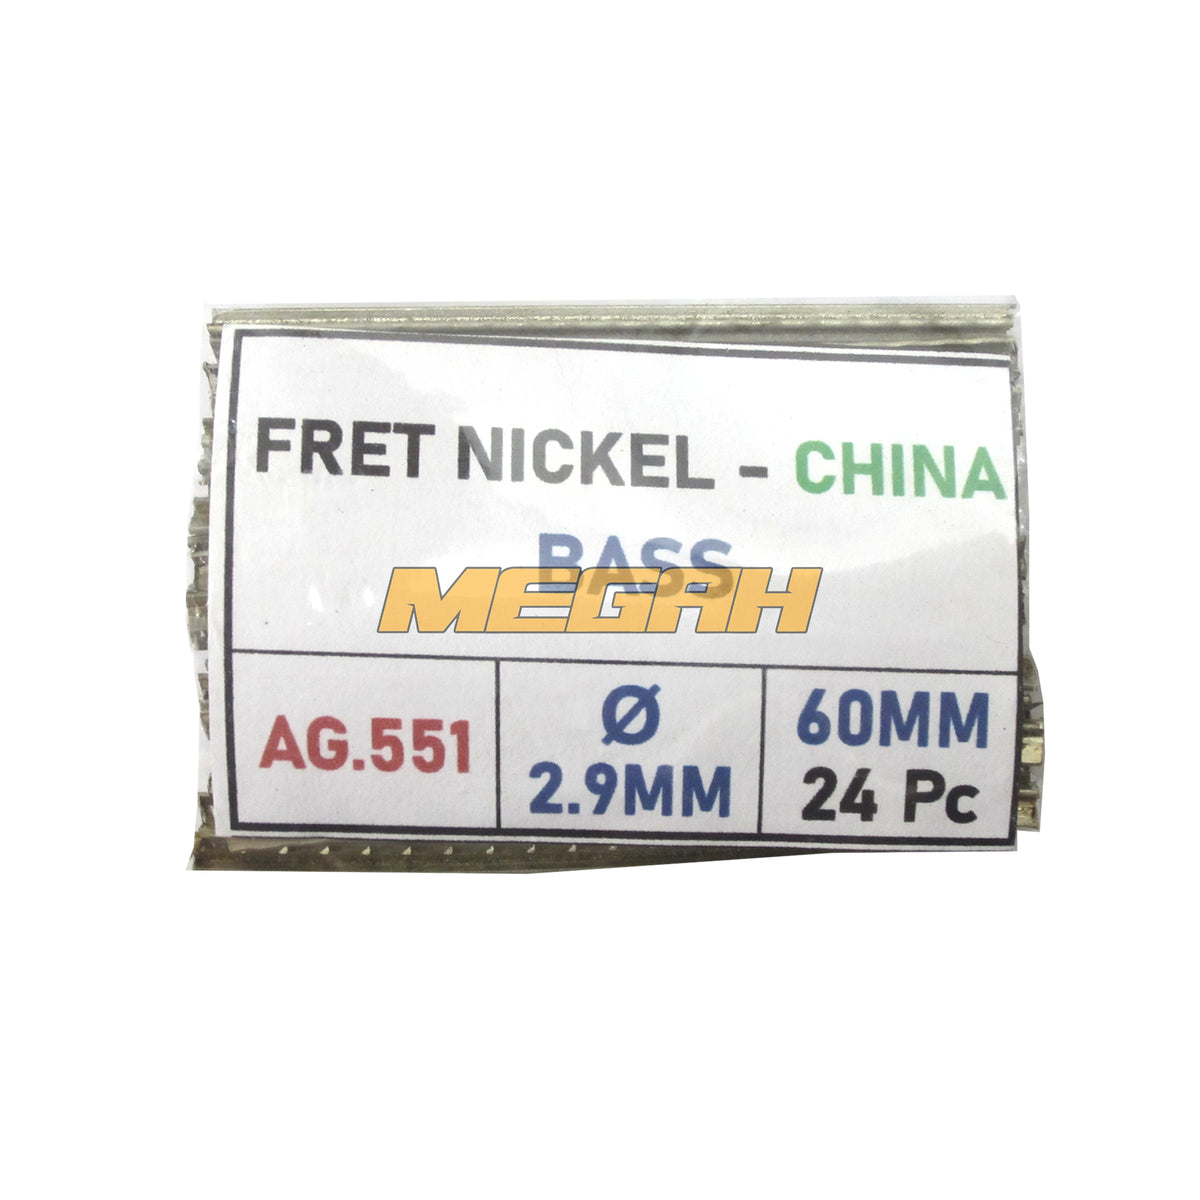 KAWAT FRET GITAR NICKEL CHINA - BASS (AG551) - Megah Sport